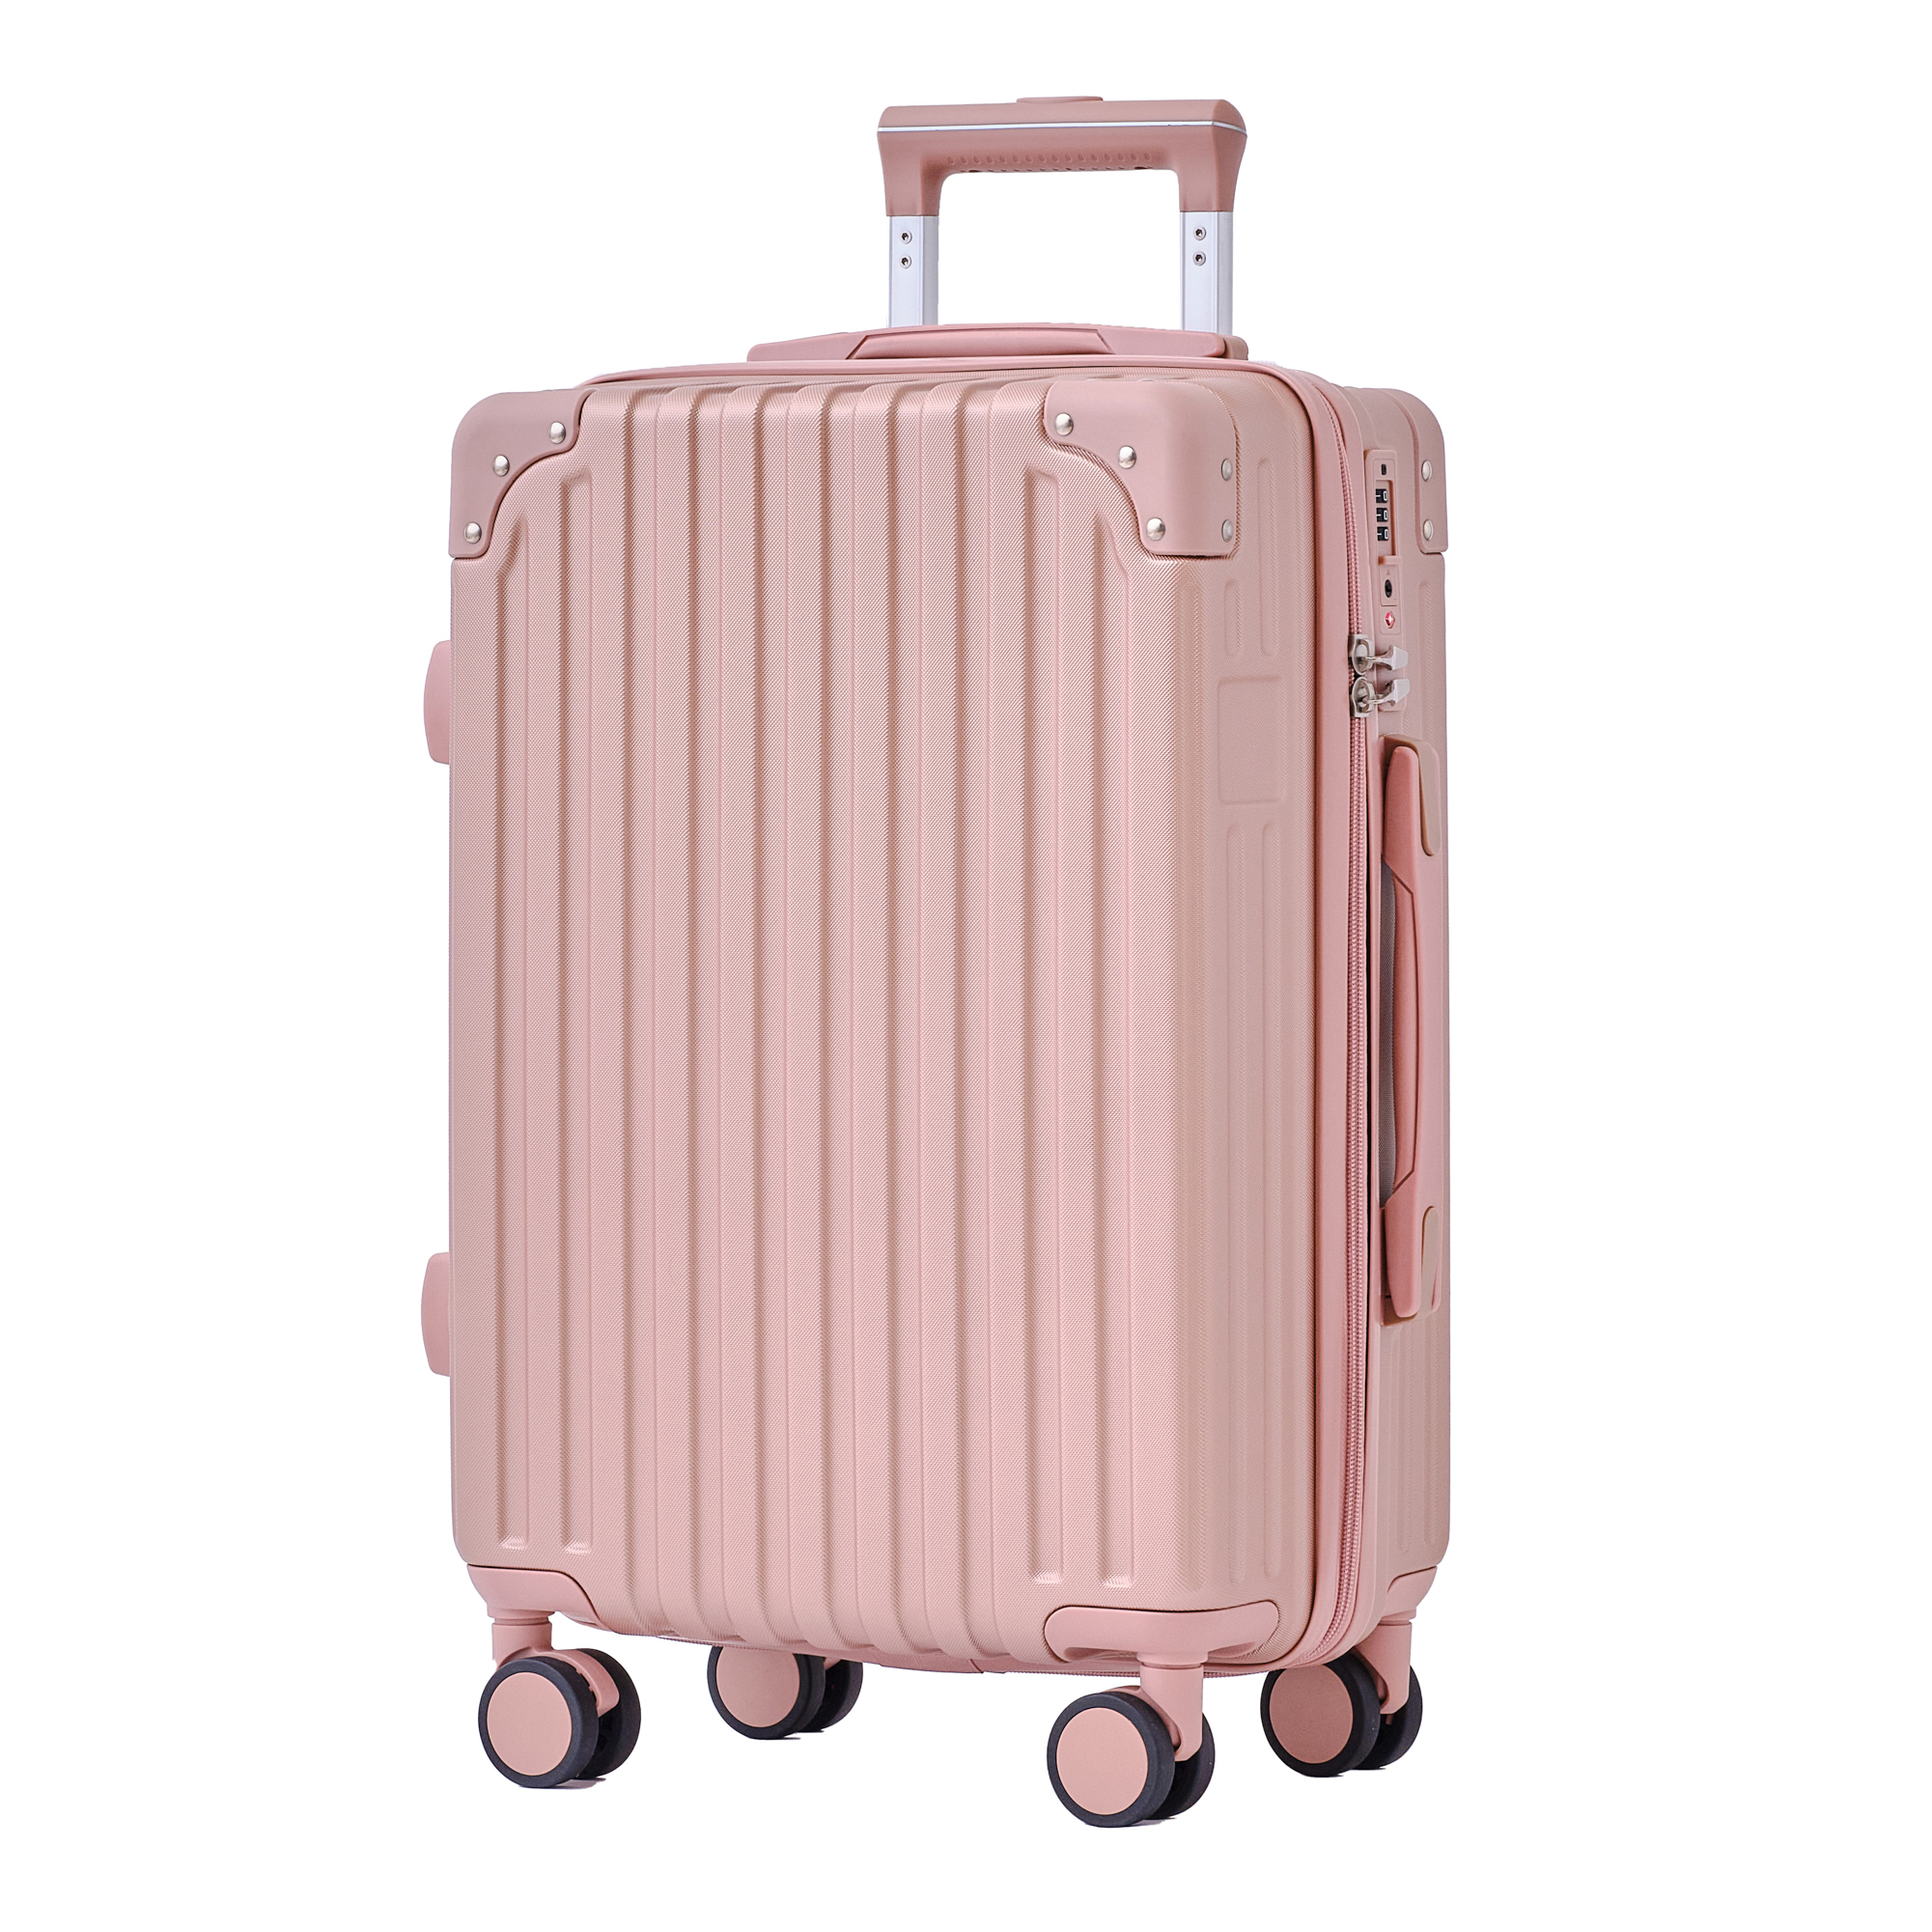 【ランキングNO.1】スーツケース SサイズMサイズ キャリーケース キャリーバッグ 機内持込 TSAロック かわいい 軽量 2泊3日 41L  修学旅行 単品 1年保証